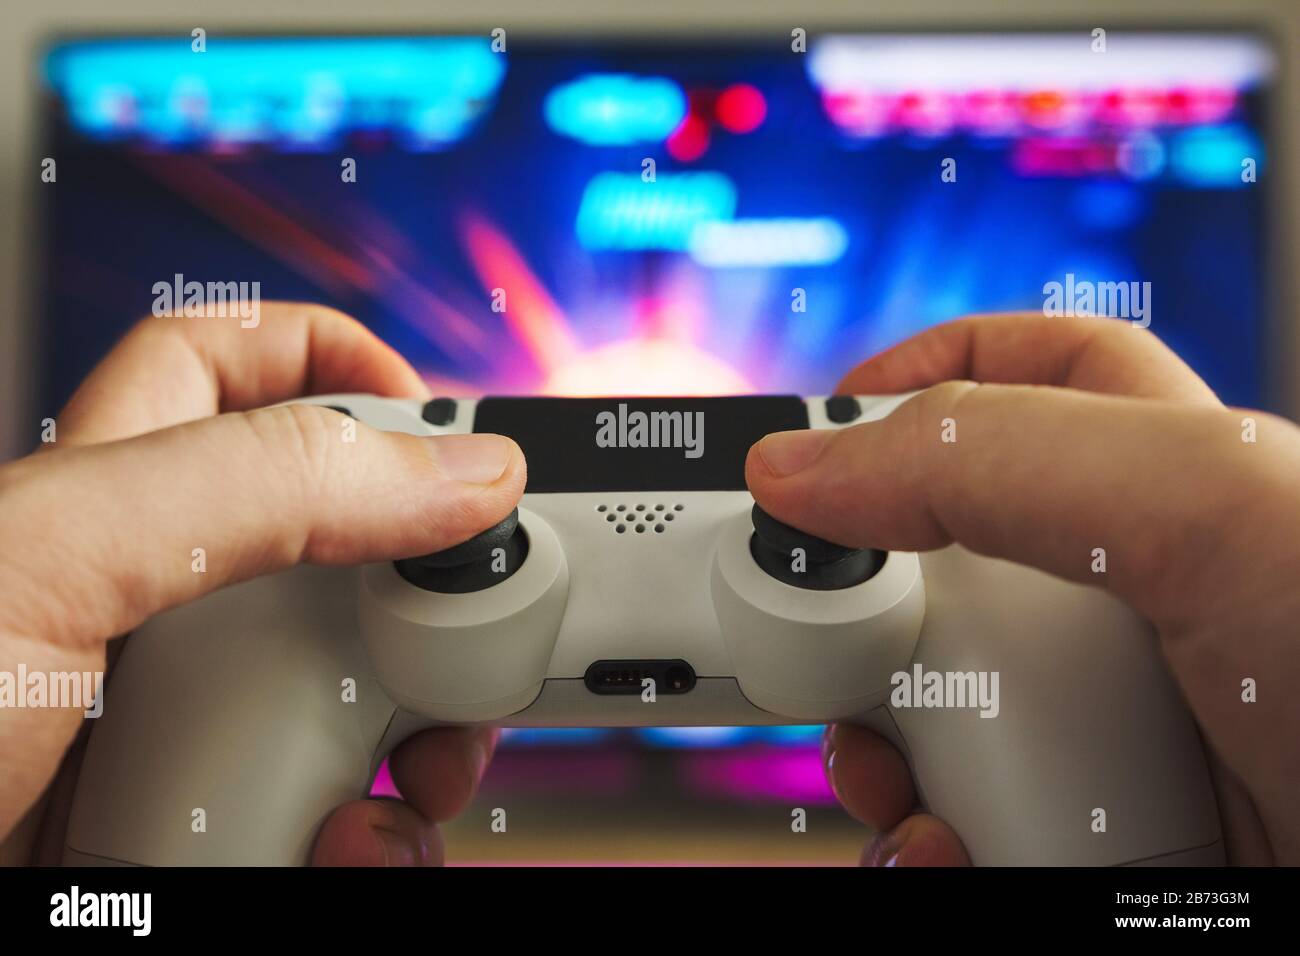 Foto di stock di alcune mani con un gamepad che gioca un gioco sparatutto sulla console di gioco Foto Stock